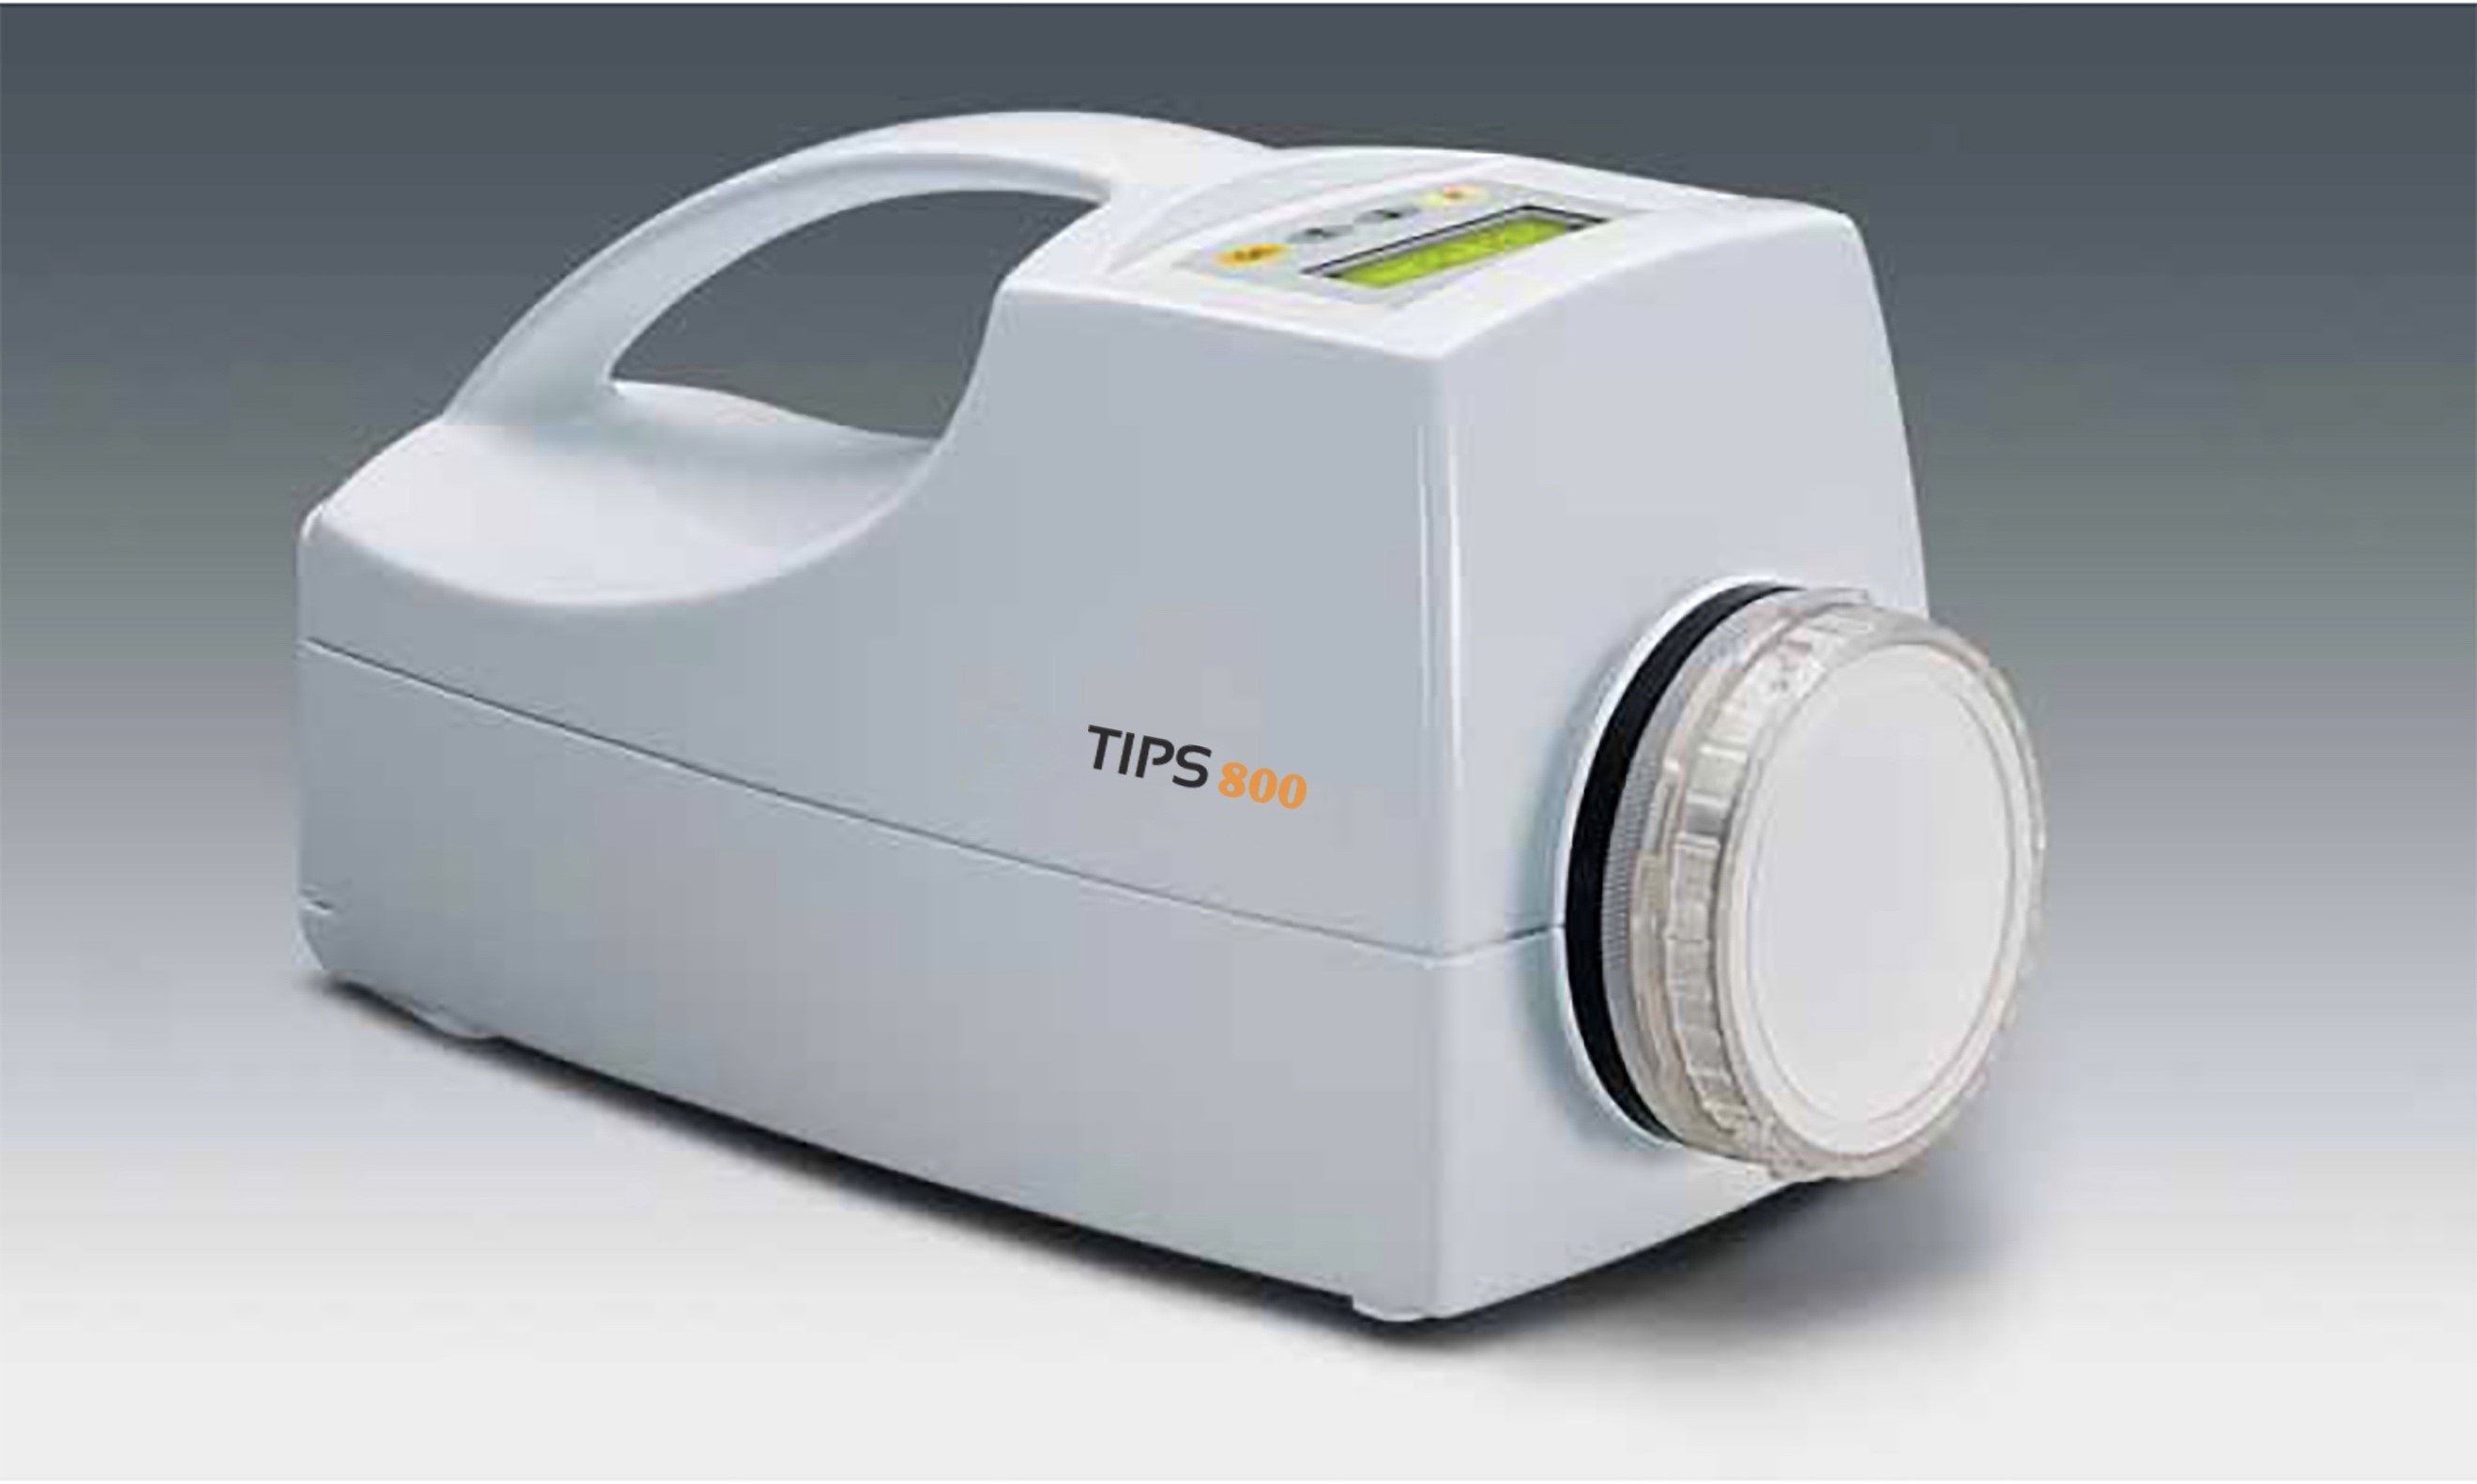 病毒采样器 /浮游菌采样器 TIPS800